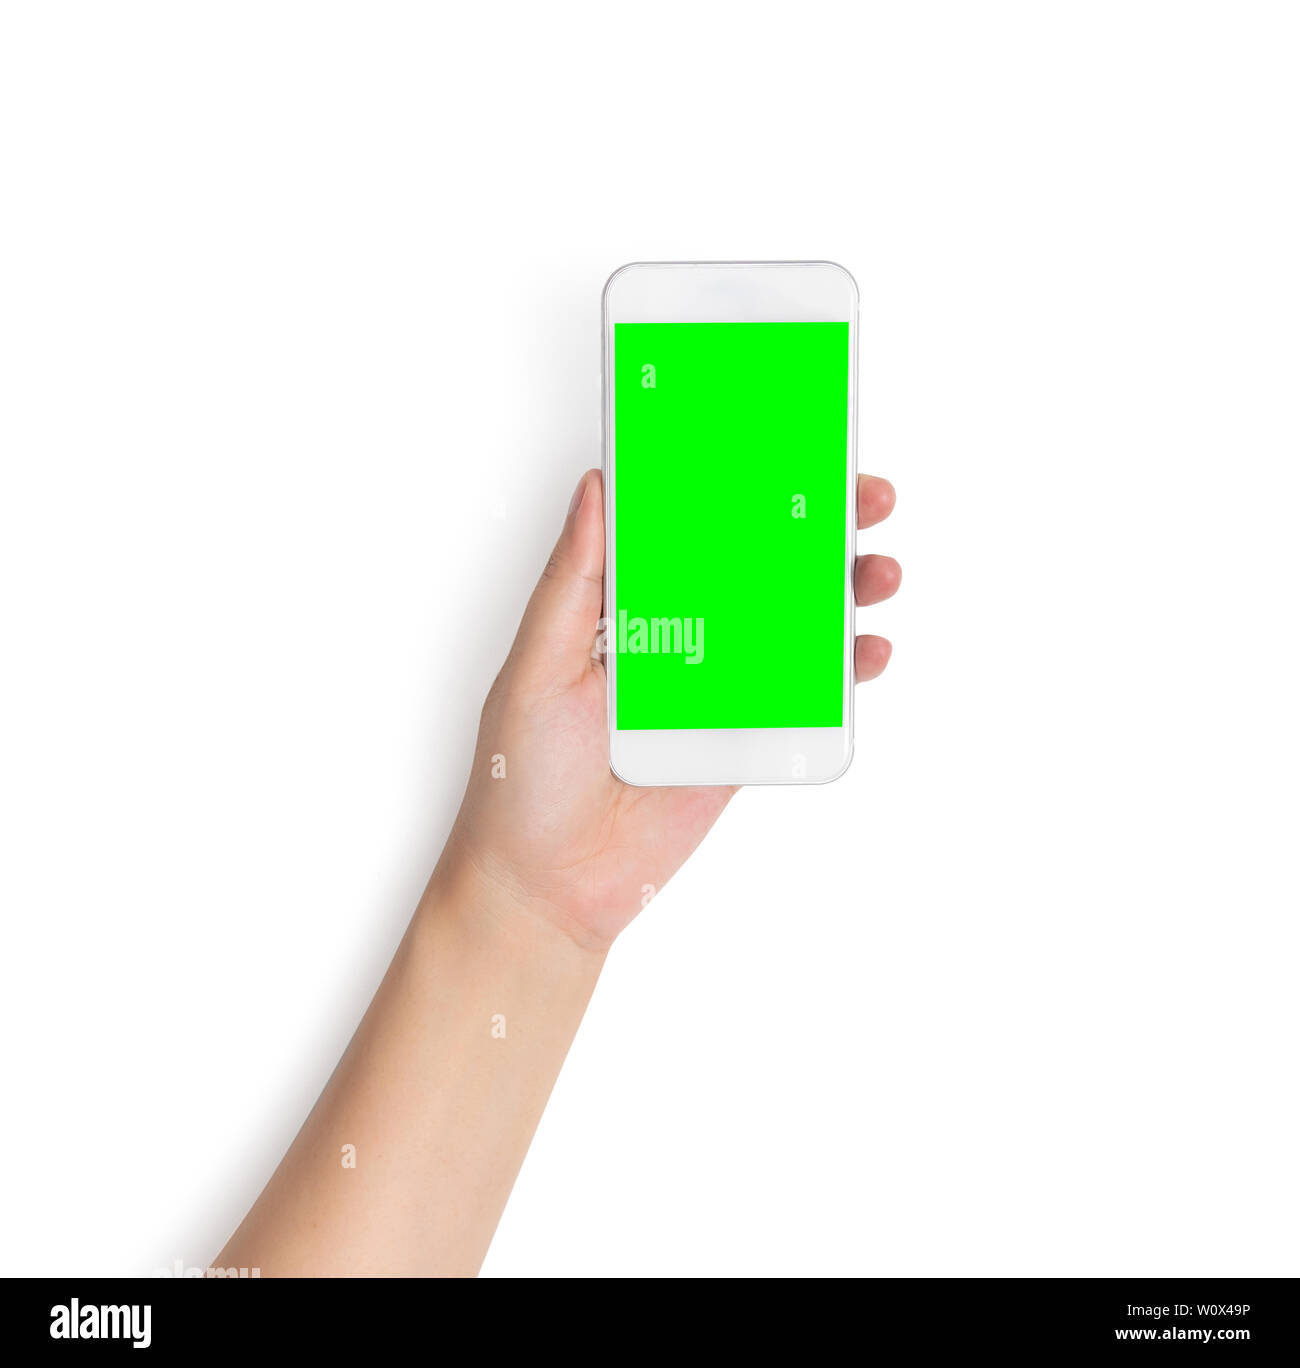 Điện thoại di động với màn hình xanh trống trên tay, bạn có thể tưởng tượng ra nó sẽ hiển thị gì? Có thể đó là một sản phẩm công nghệ mới nhất, một ứng dụng độc đáo hoặc thậm chí là một trò chơi hấp dẫn. Hãy xem ảnh liên quan để khám phá những gì đang được đợi chờ trên màn hình xanh kia nhé!